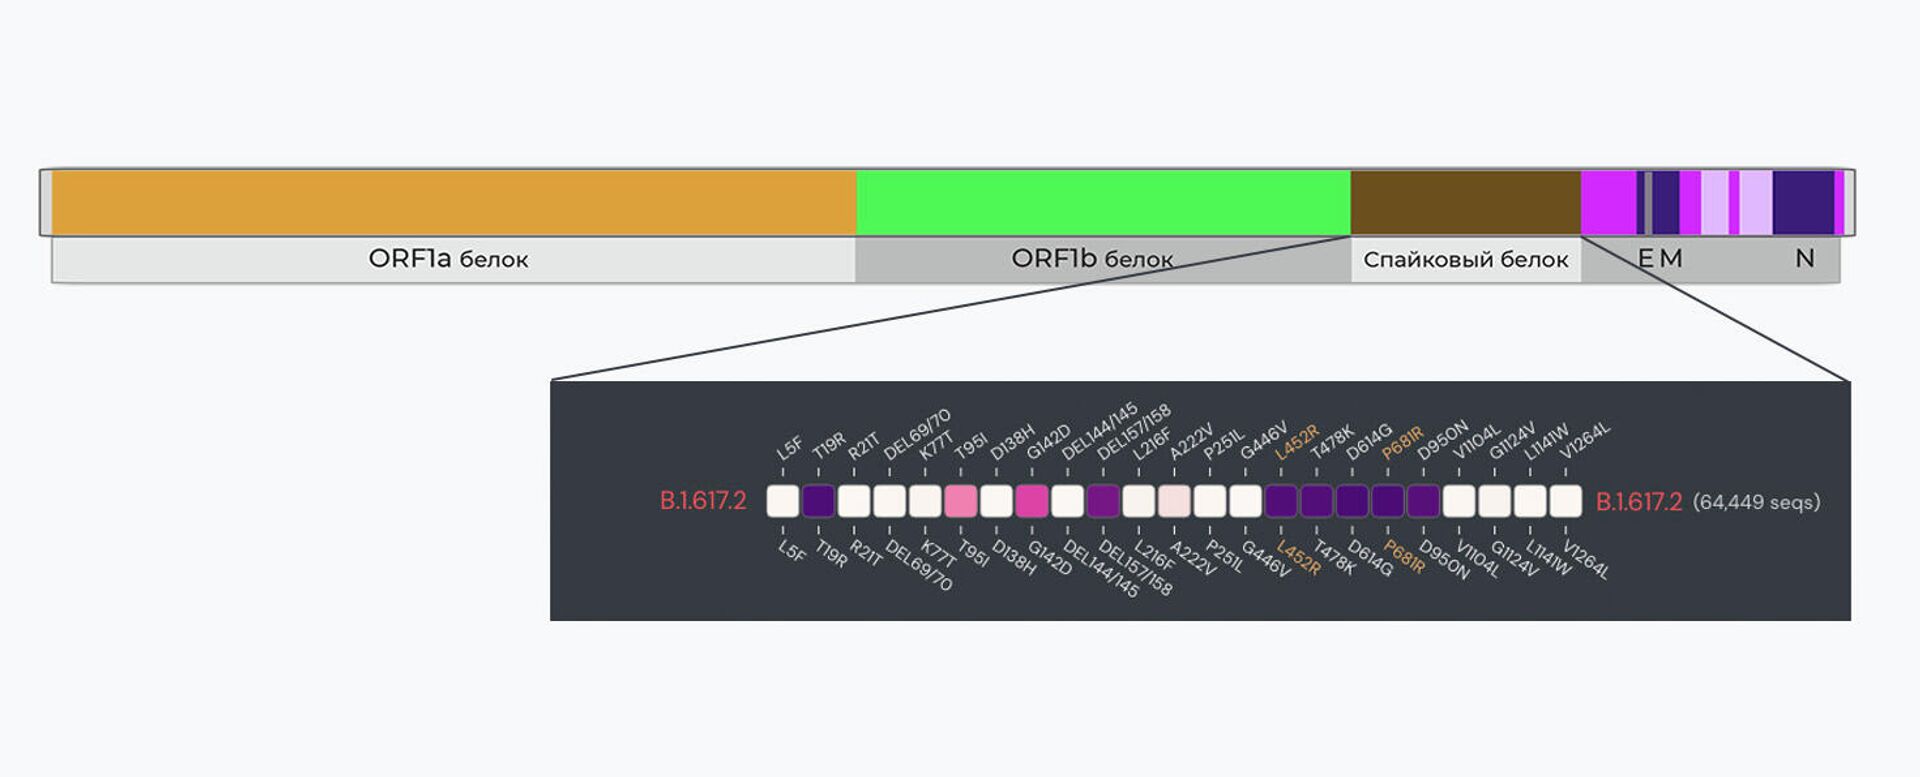 Общая структура генома коронавируса SARS-Cov-2. Каждый участок, показанный разными цветами, содержит инструкции по созданию той или иной части вируса. Например, коричневый участок содержит генетические инструкции по созданию спайкового белка, который позволяет вирусу прикрепляться к клеткам во время инфекции. Снизу детально показан участок генома спайкового белка с мутациями, характерными для варианта В.1.617.2 Дельта (отмечены желтым). Интенсивность цвета указывает на степень мутирования генов - РИА Новости, 1920, 24.06.2021